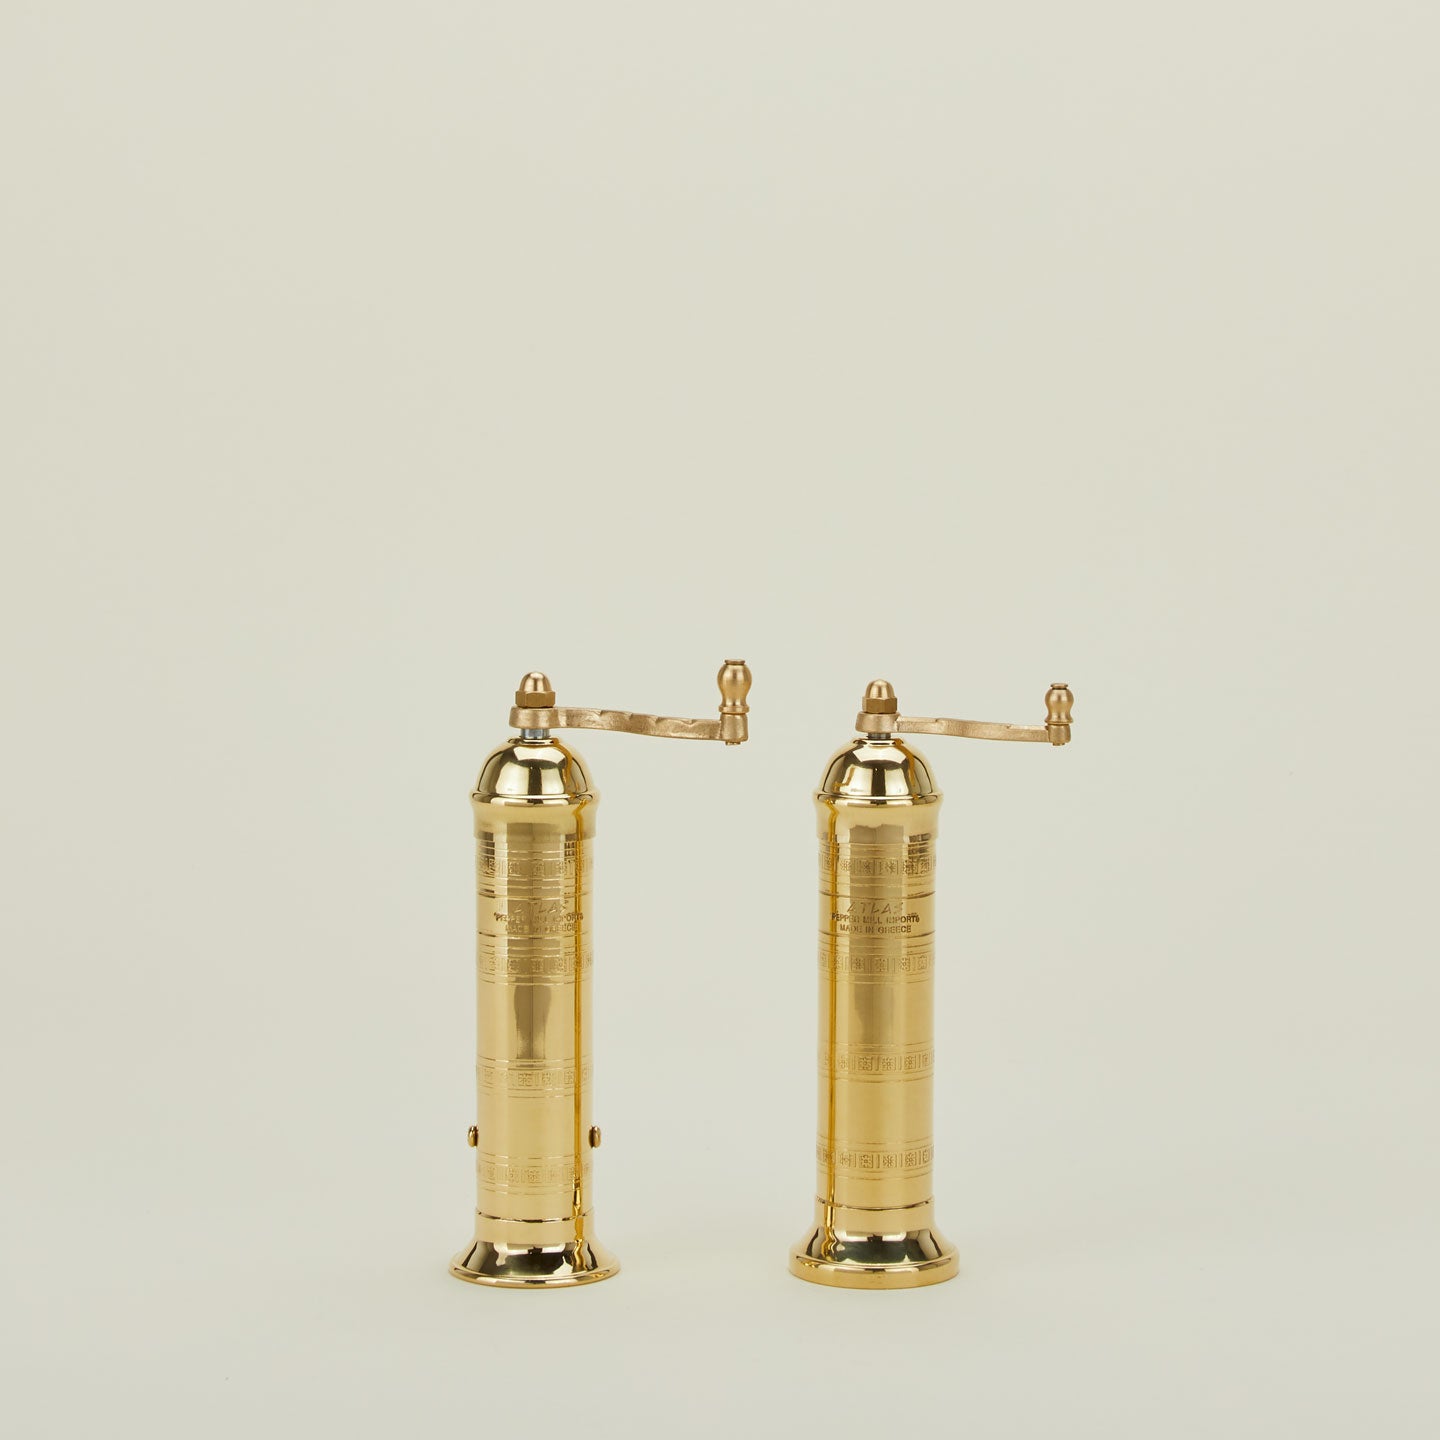 A pair of brass salt and pepper mills.